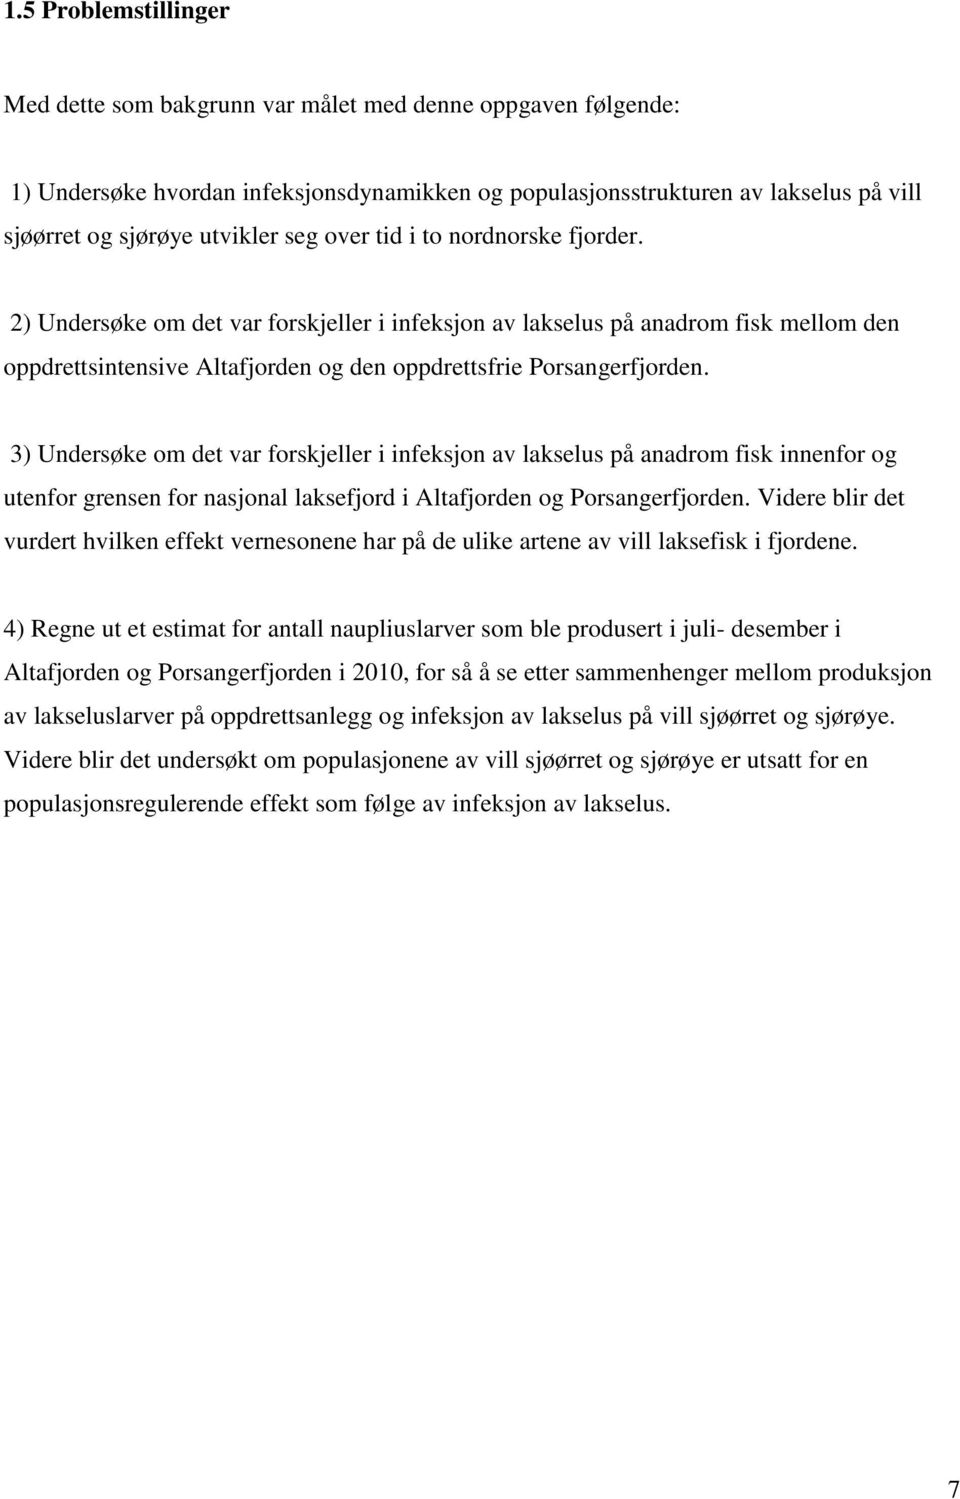 3) Undersøke om det var forskjeller i infeksjon av lakselus på anadrom fisk innenfor og utenfor grensen for nasjonal laksefjord i Altafjorden og Porsangerfjorden.